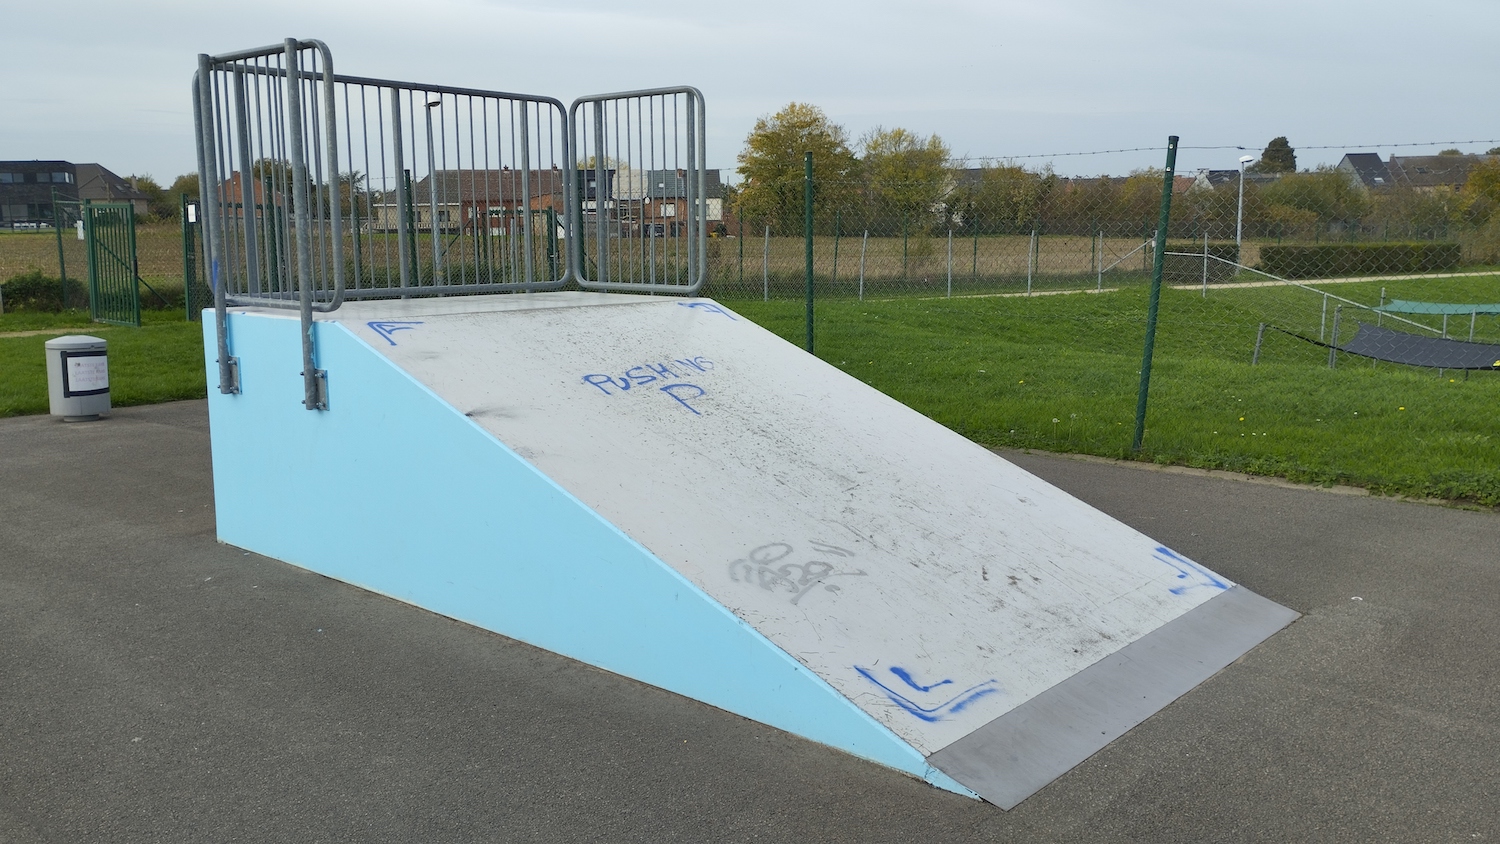 Scherpenheuvel skatepark